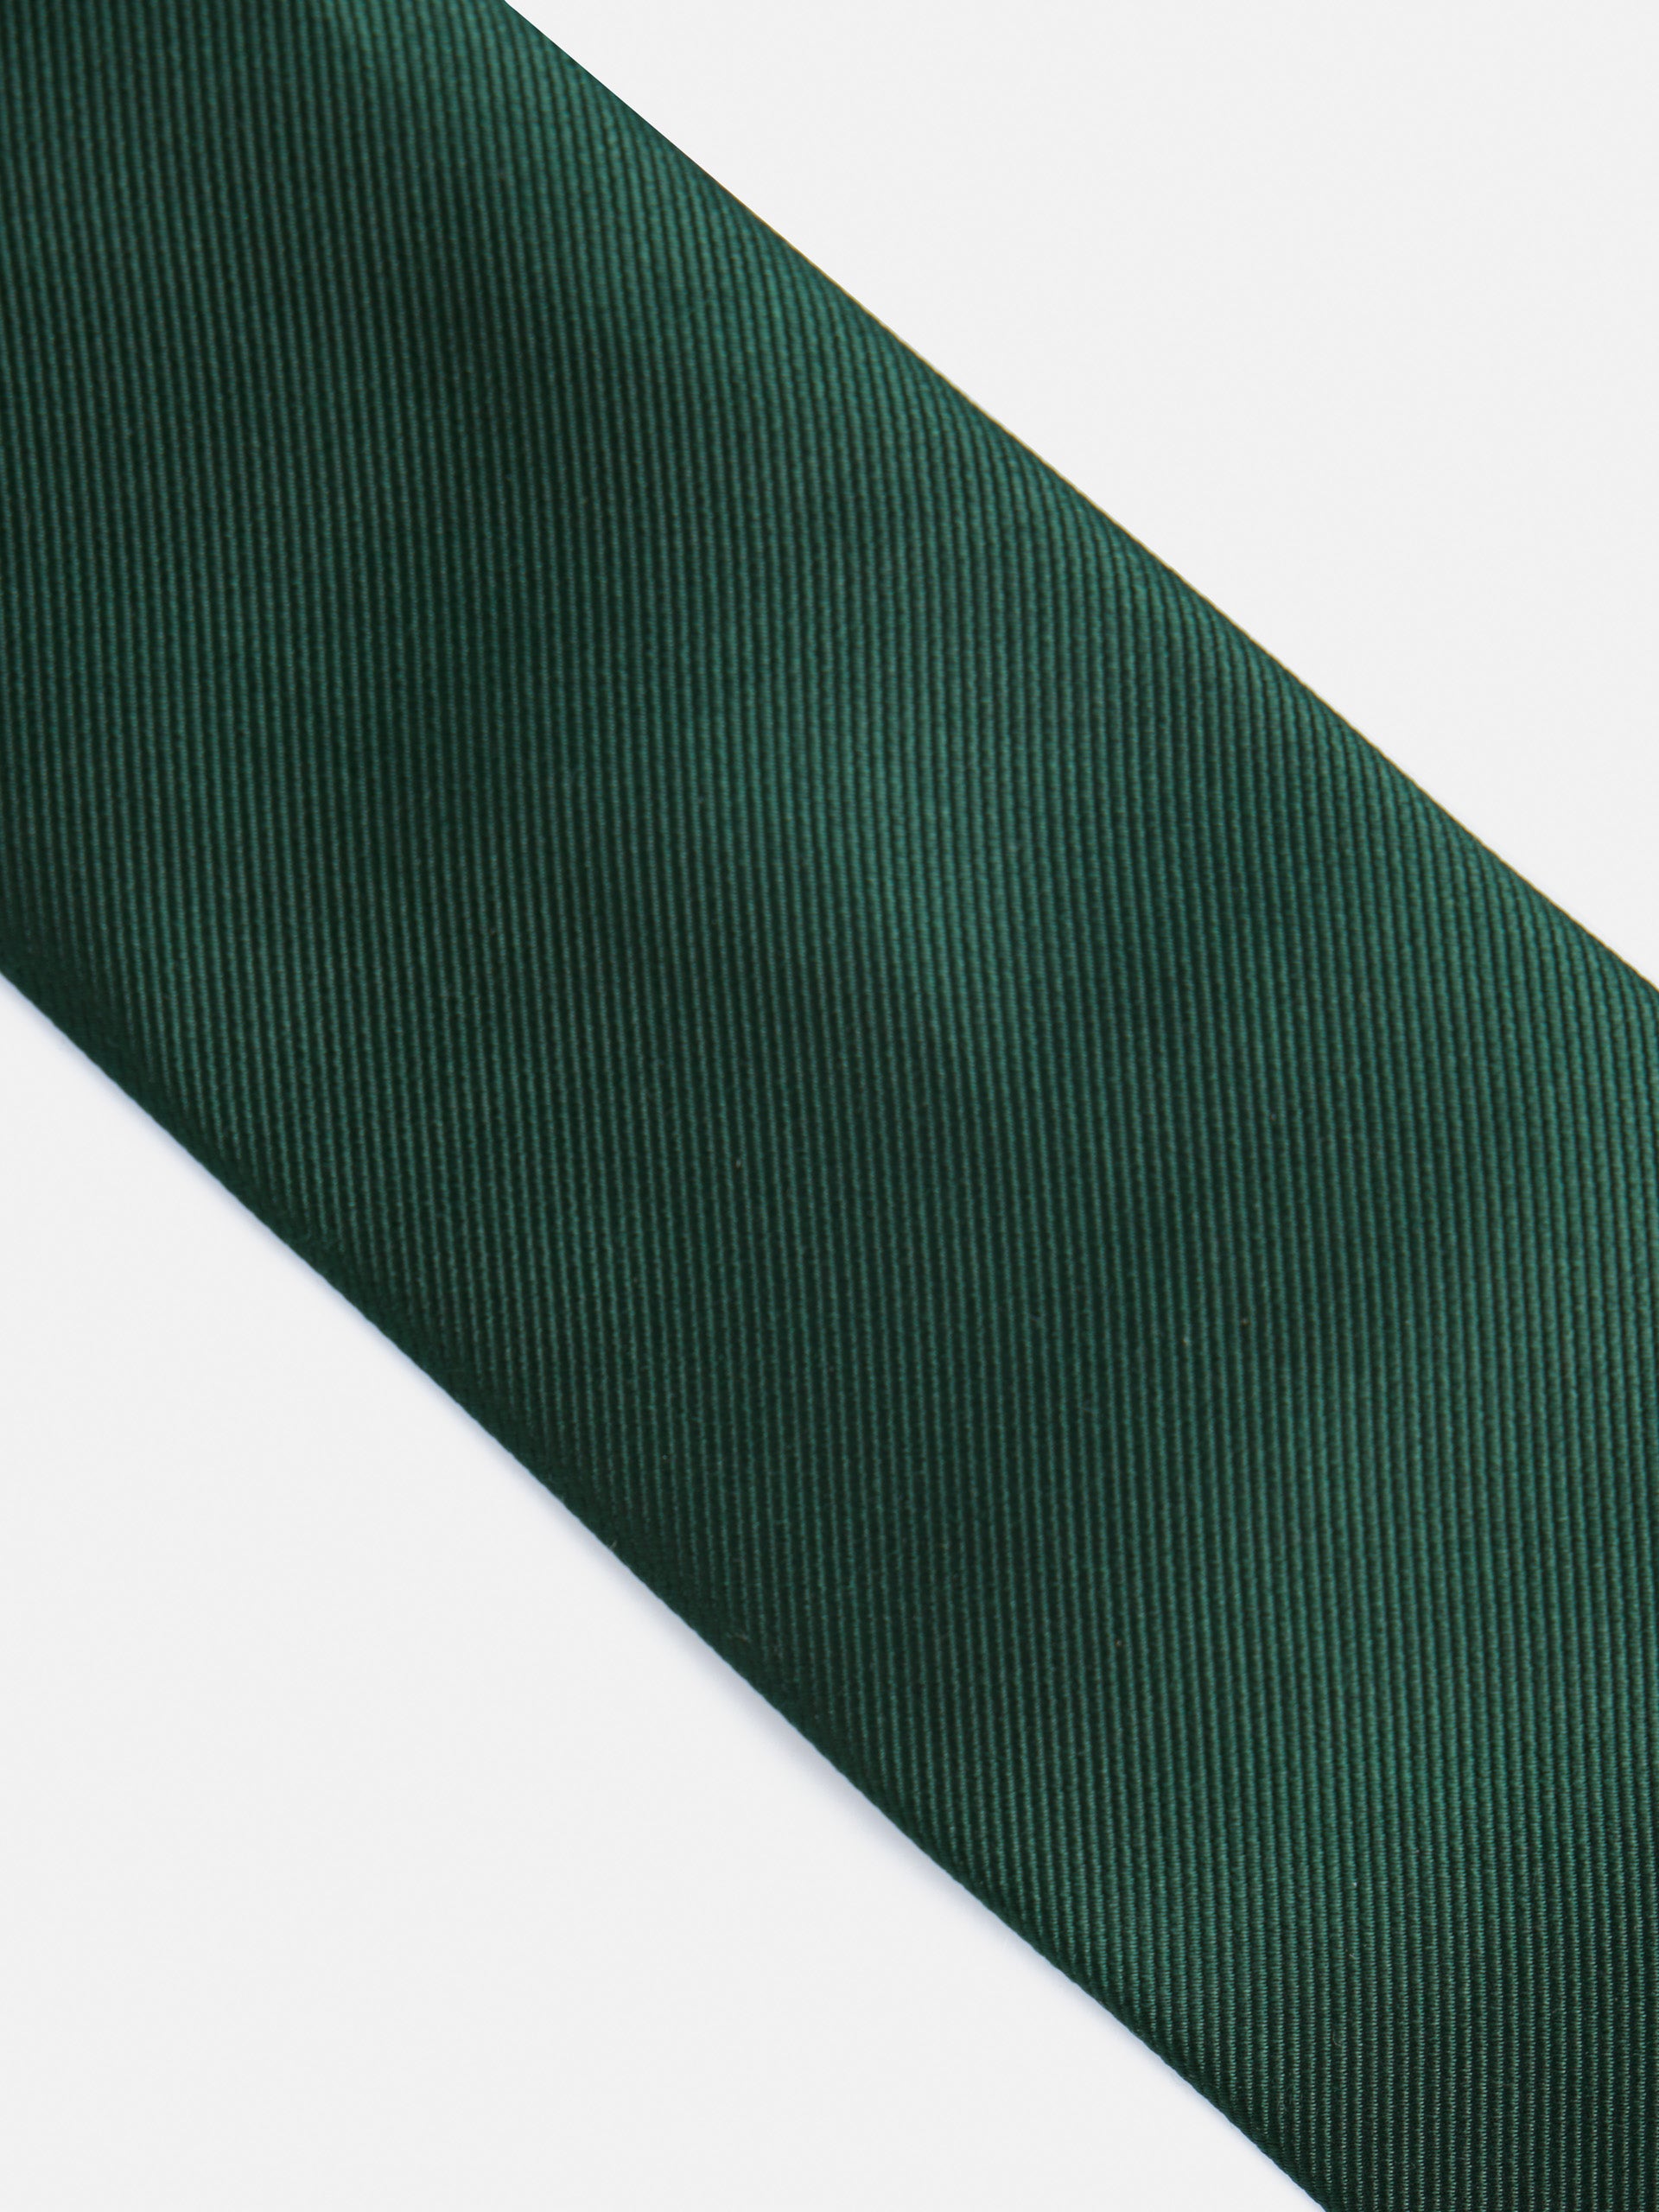 Corbata silbon lisa verde